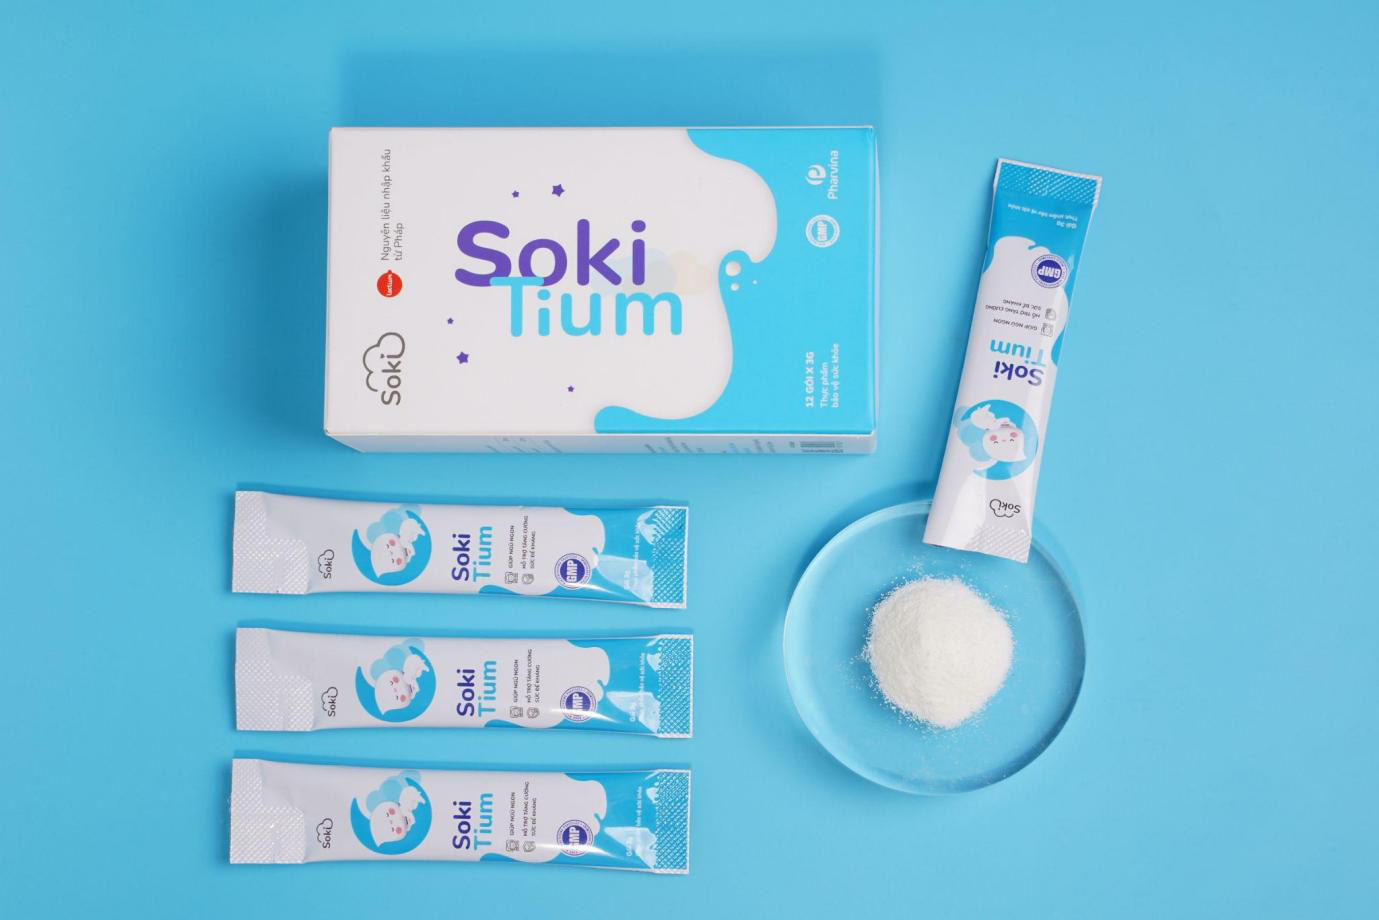 Soki Tium “thay áo mới”, hứa hẹn mang đến trải nghiệm tối ưu cho khách hàng - Ảnh 3.